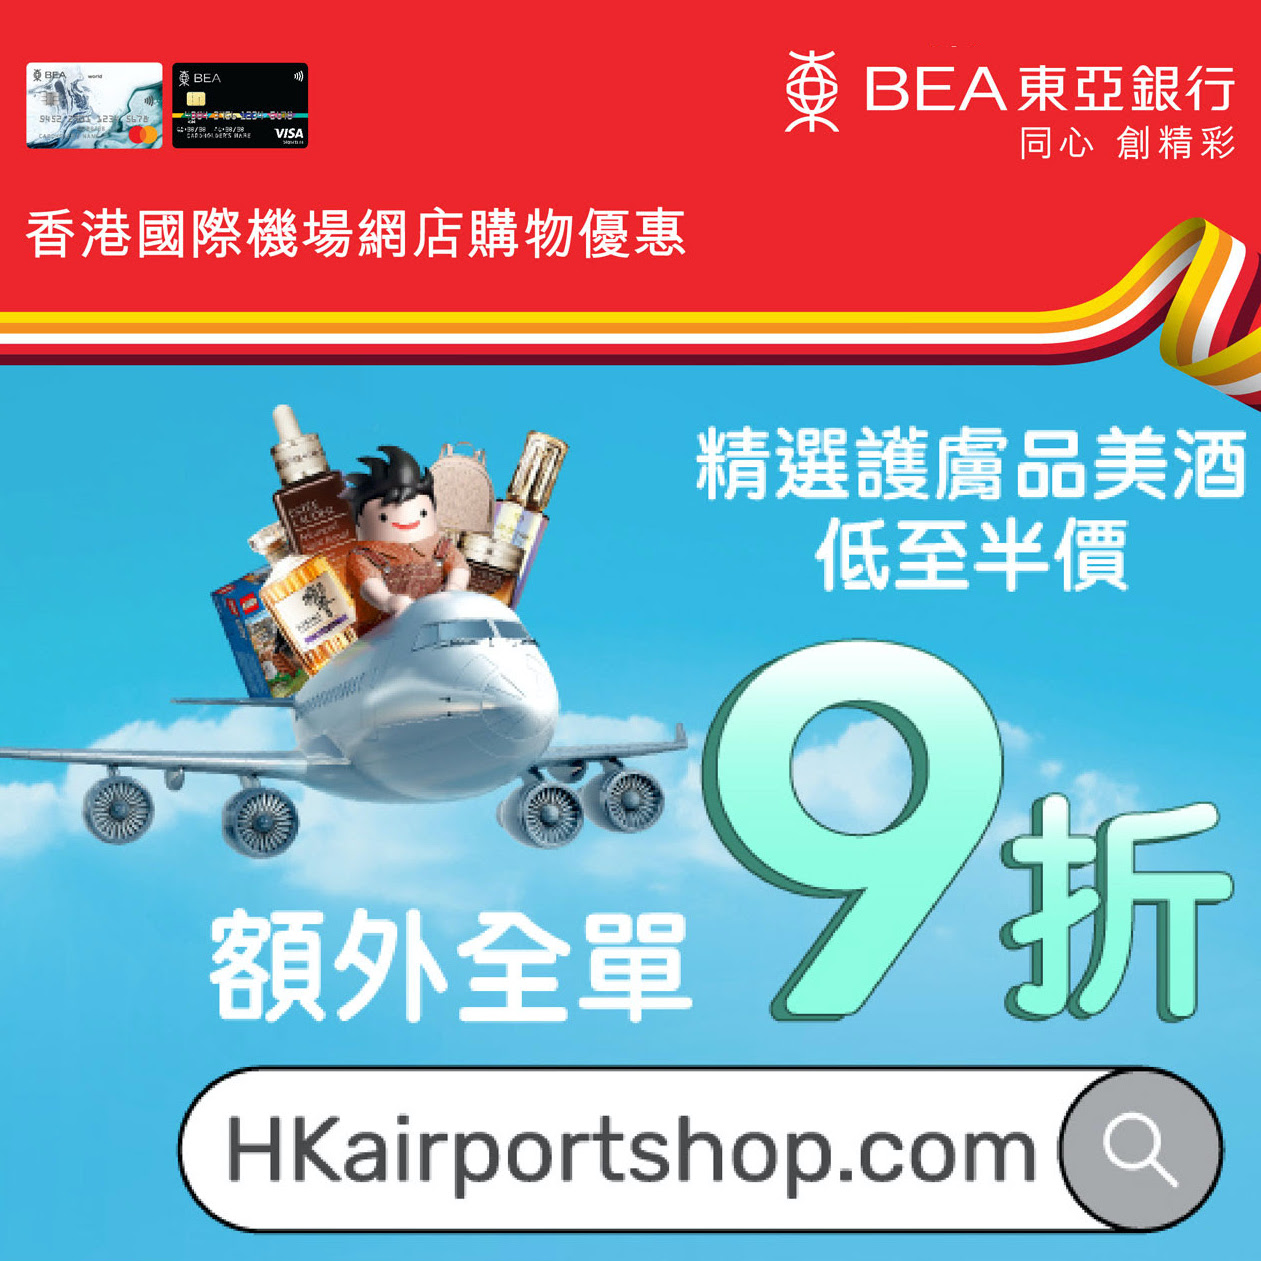 東亞信用卡香港國際機場網店購物優惠！買滿港幣$500或以上享全單9折 + HK$100電子現金券！